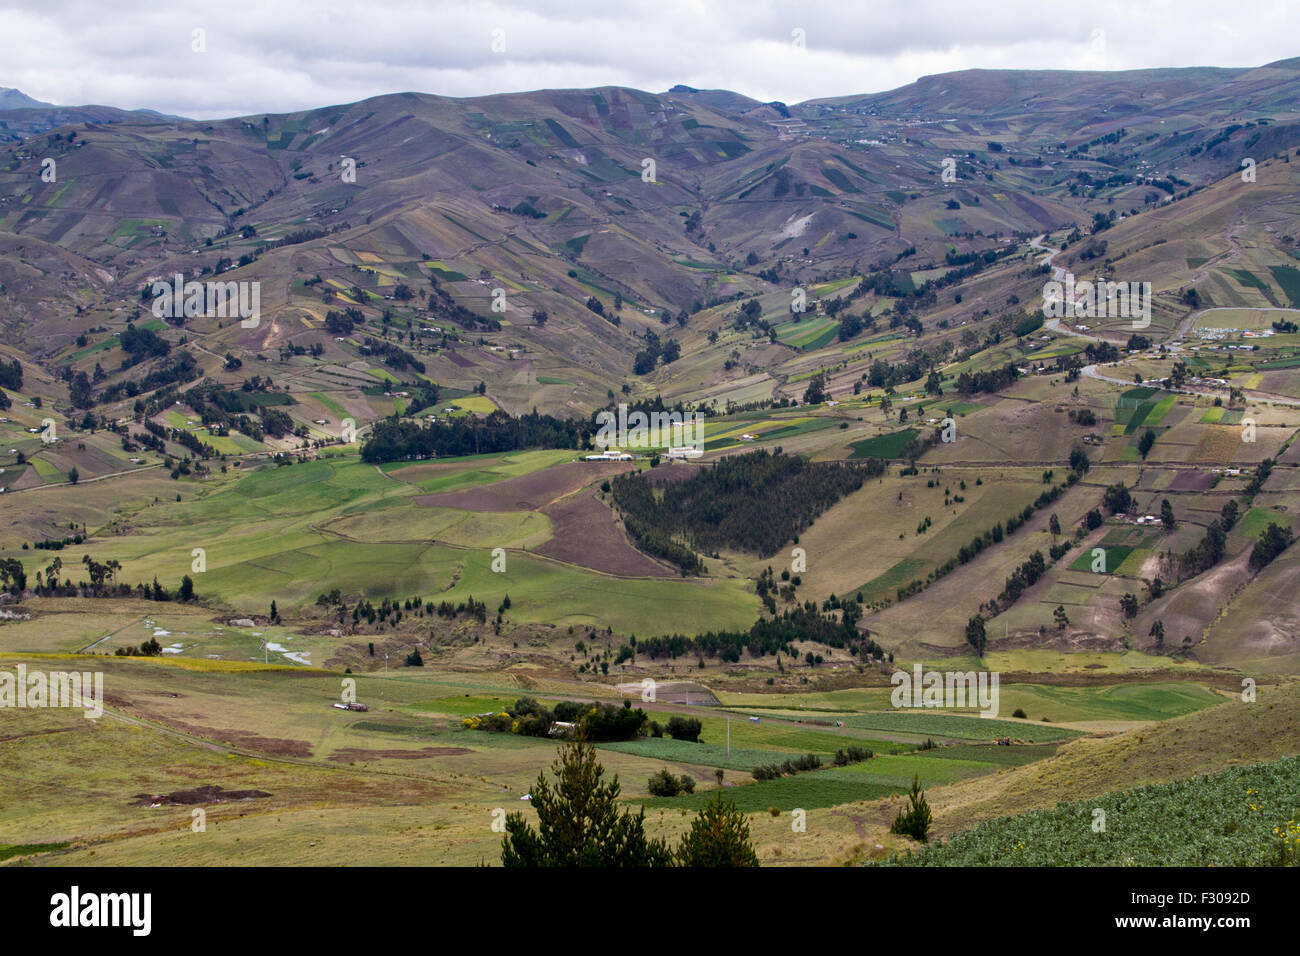 Indigenous farmlands in Andean mountains near Laguna Quilotoa, Ecuador. Stock Photo